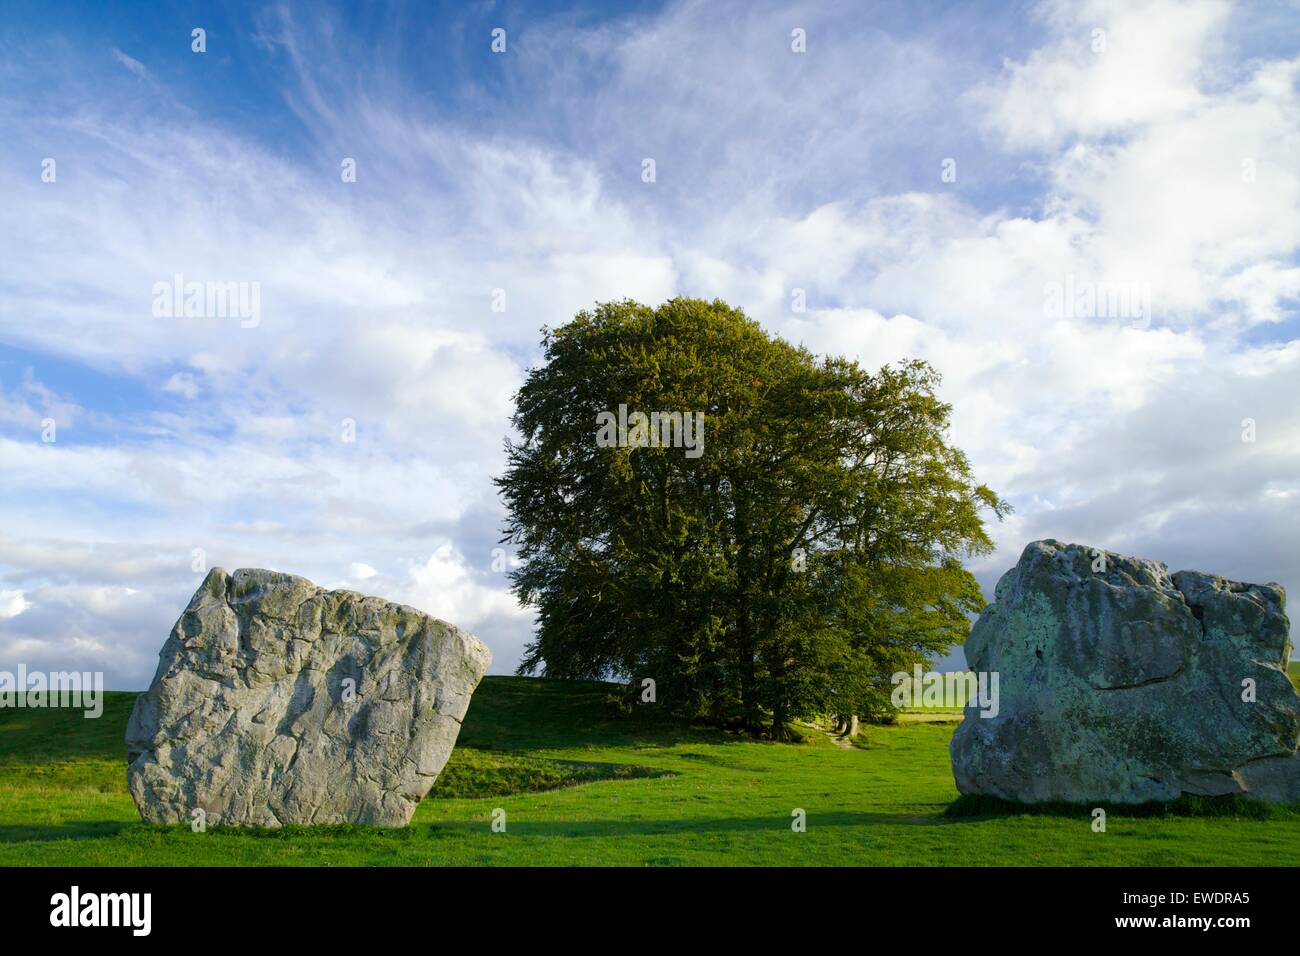 Megalithic stone circle, Avebury, Wiltshire, England. UK, GB Stock Photo